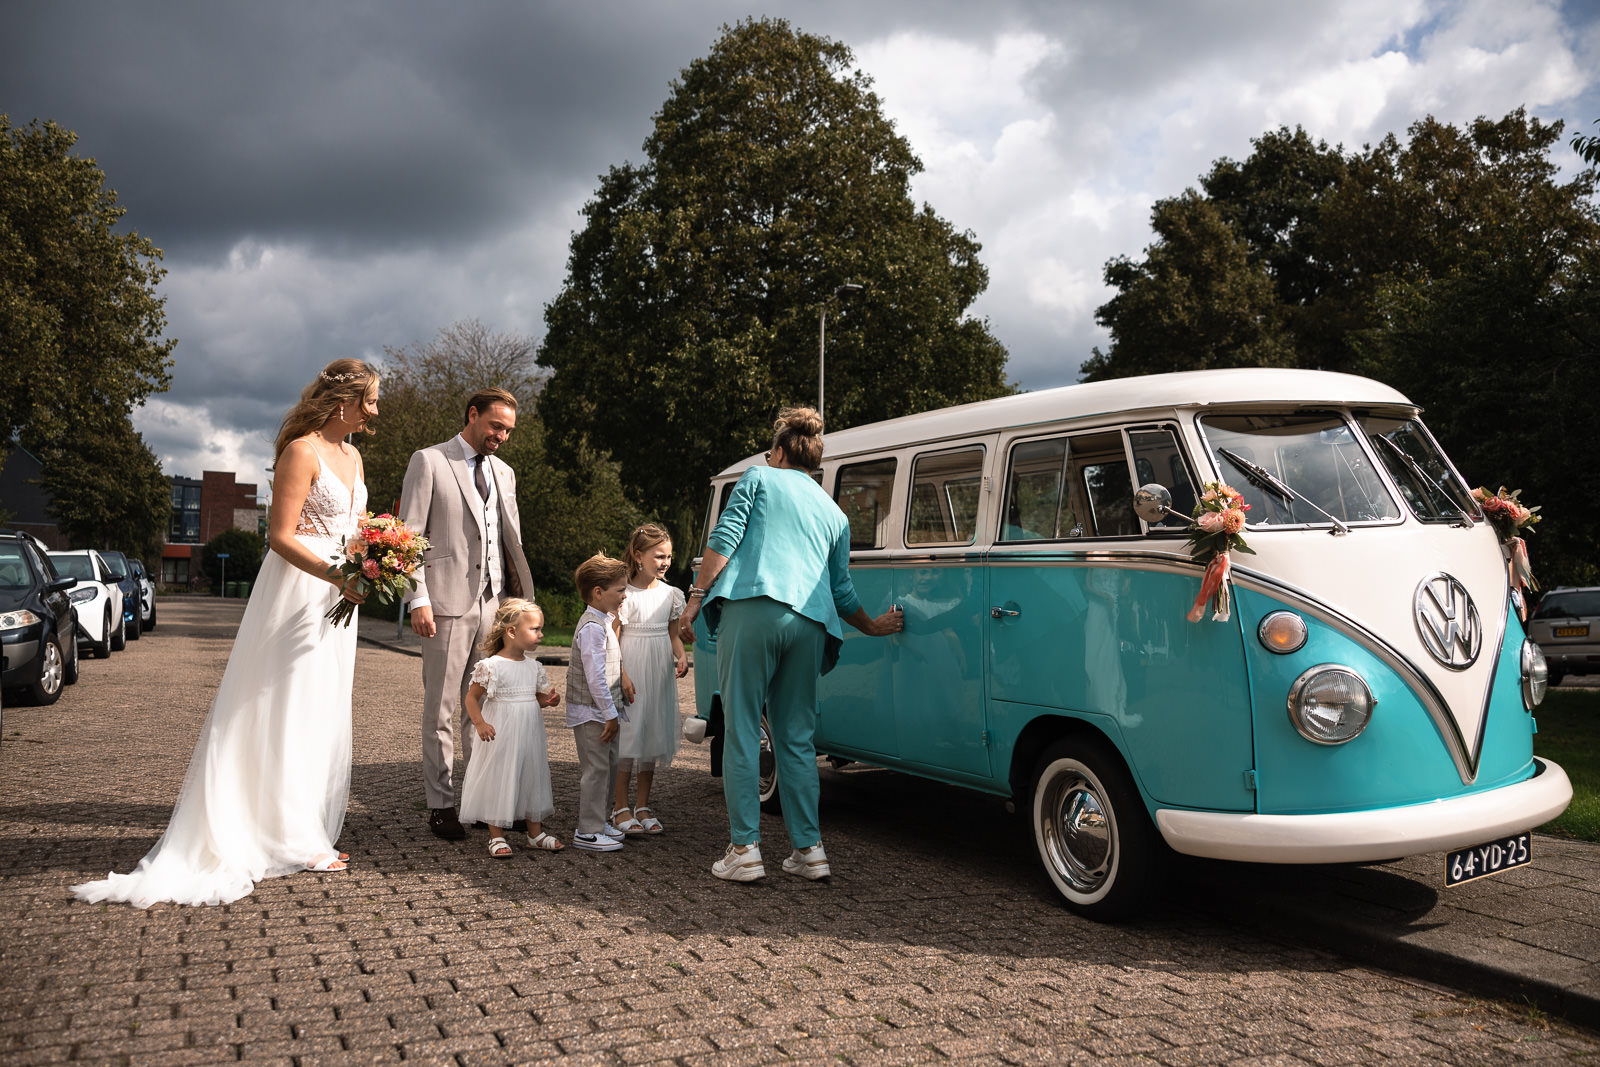 hele gezin stapt in de Volkswagen bus trouwauto om naar kasteel Oud Poelgeest te gaan